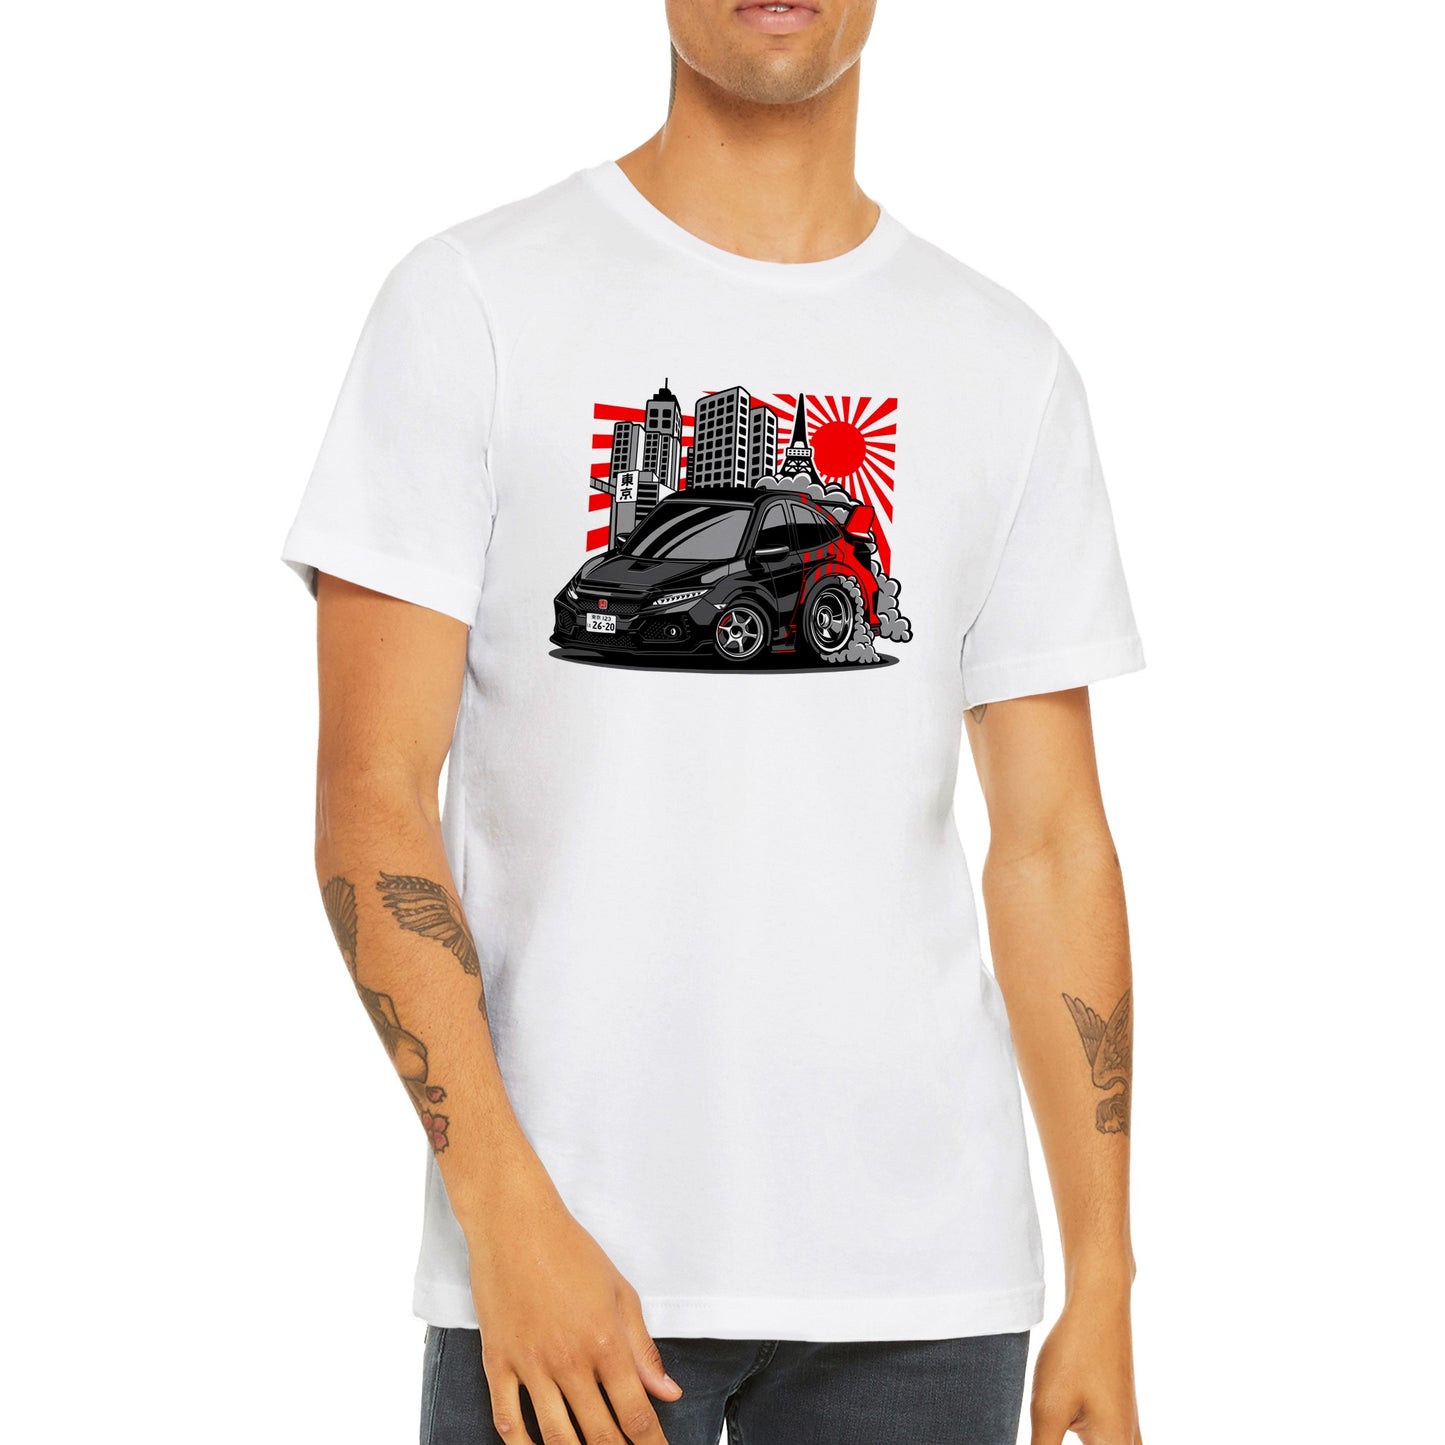 Car T-shirt - Honda - Japanese Artwork - Premium Unisex Crewneck T-shirt